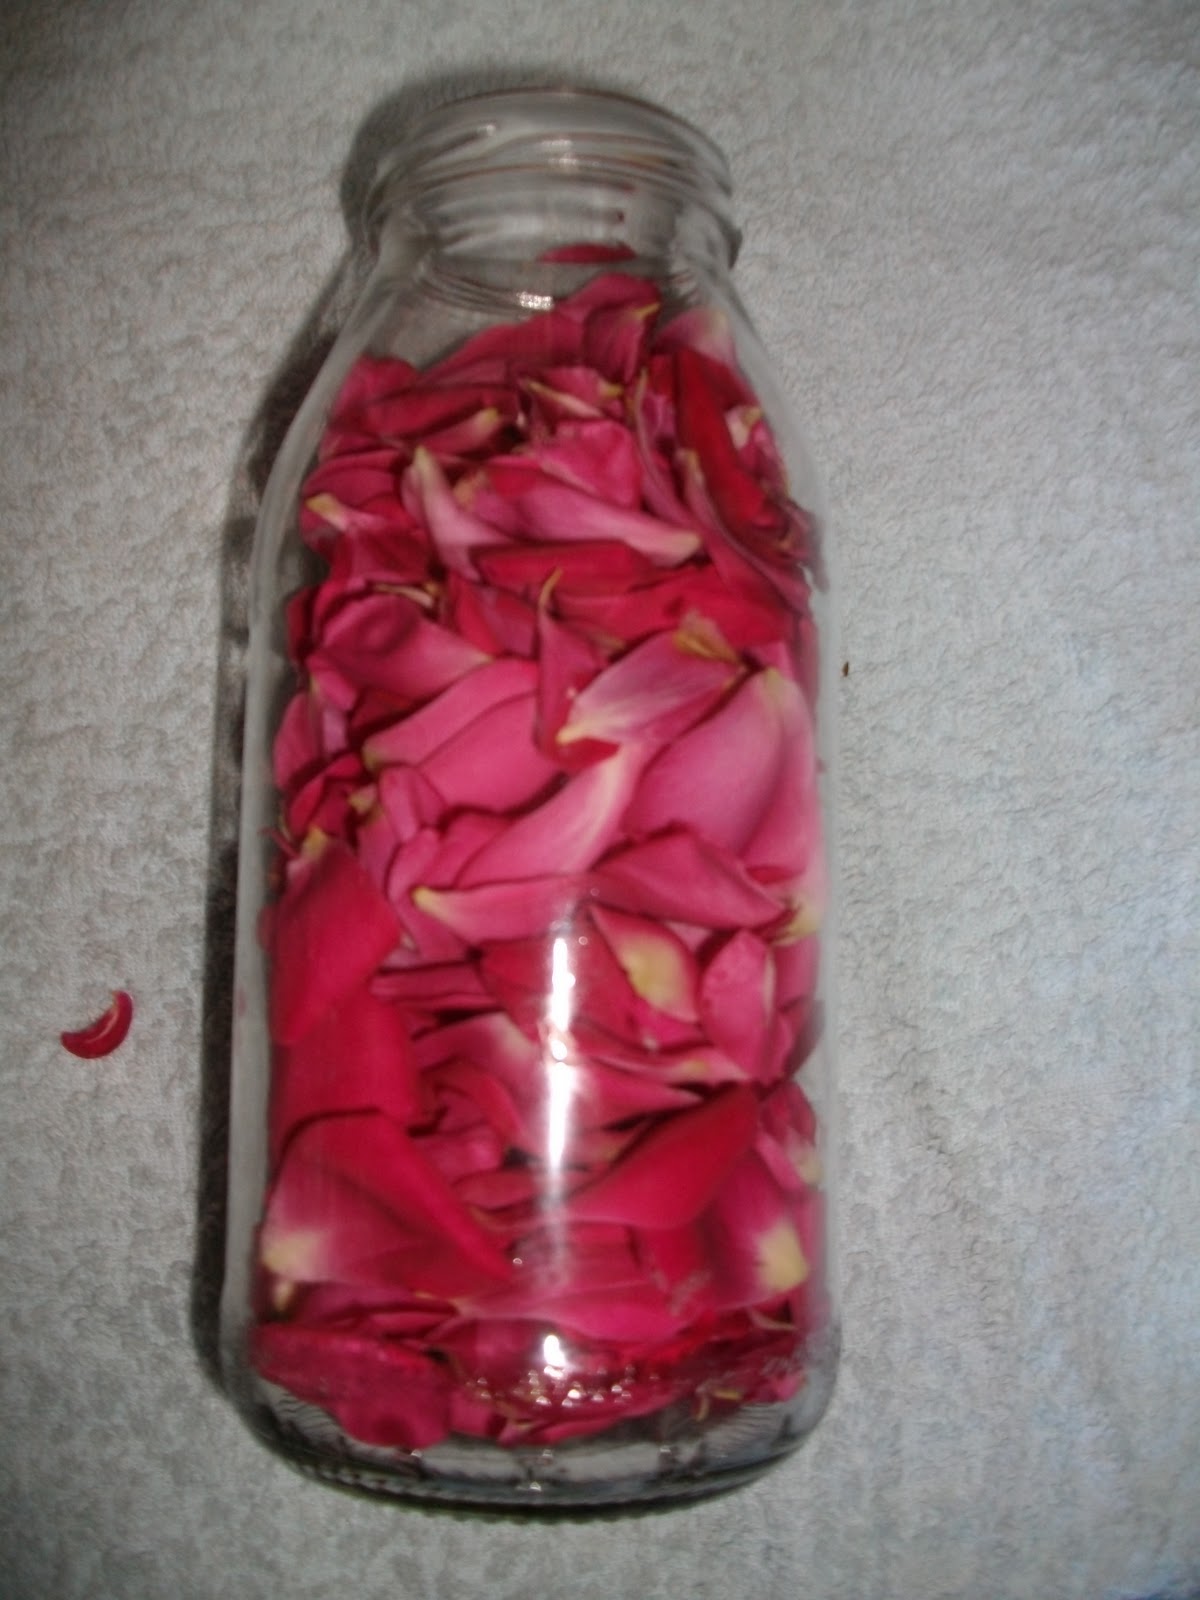 Acqua di rose fatta in casa: come realizzarla in poche mosse